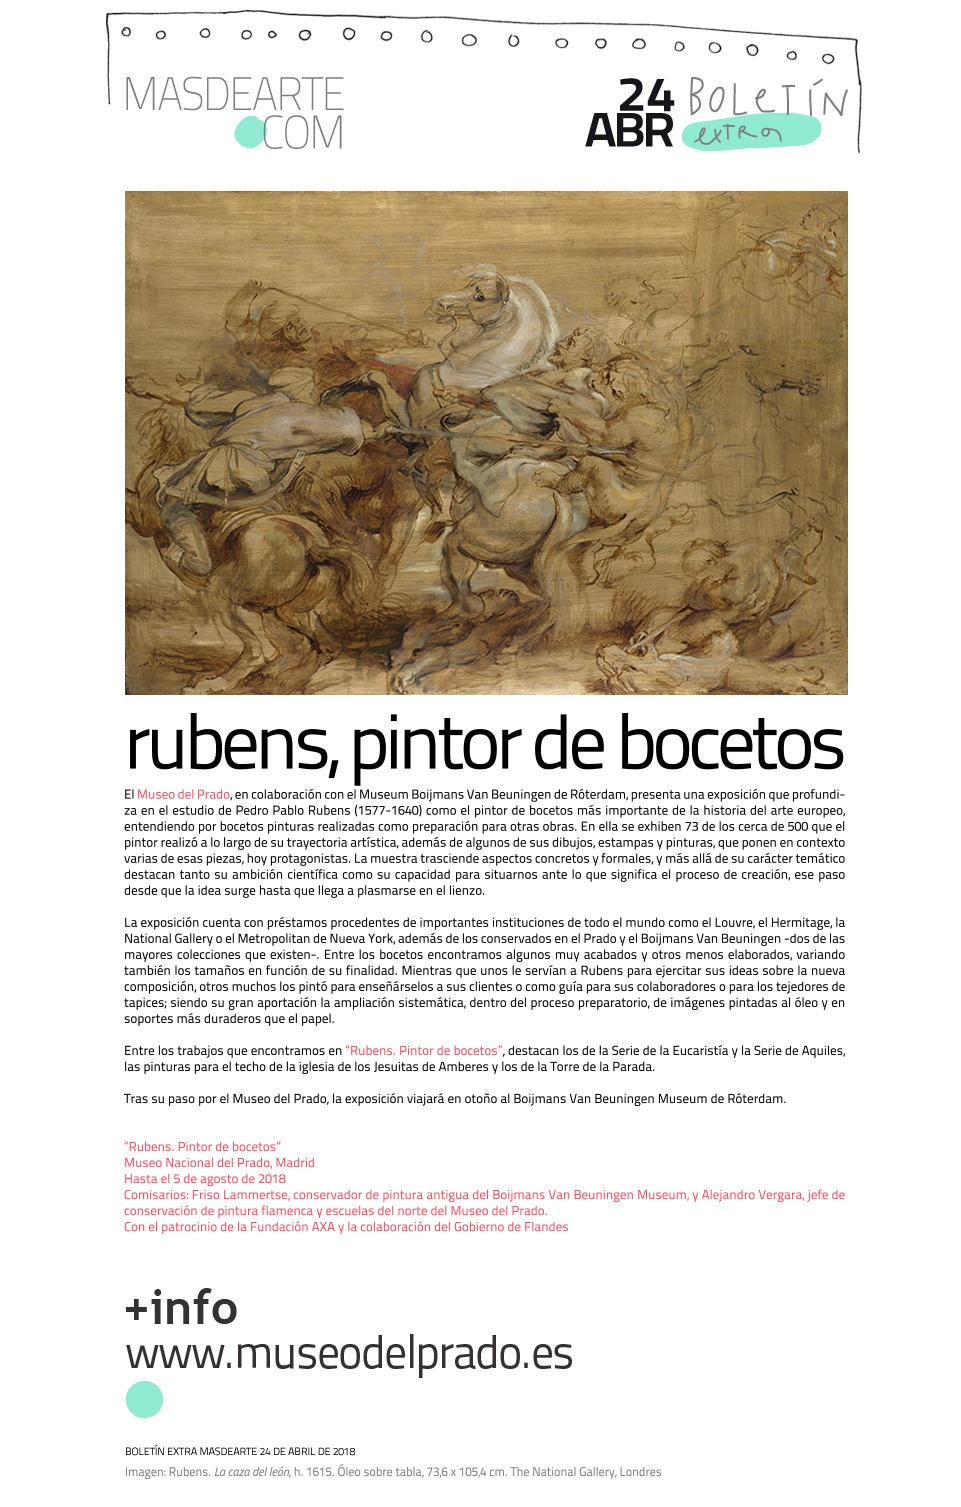 Rubens. Pintor de bocetos. Museo del Prado, hasta el 5 de agosto de 2018